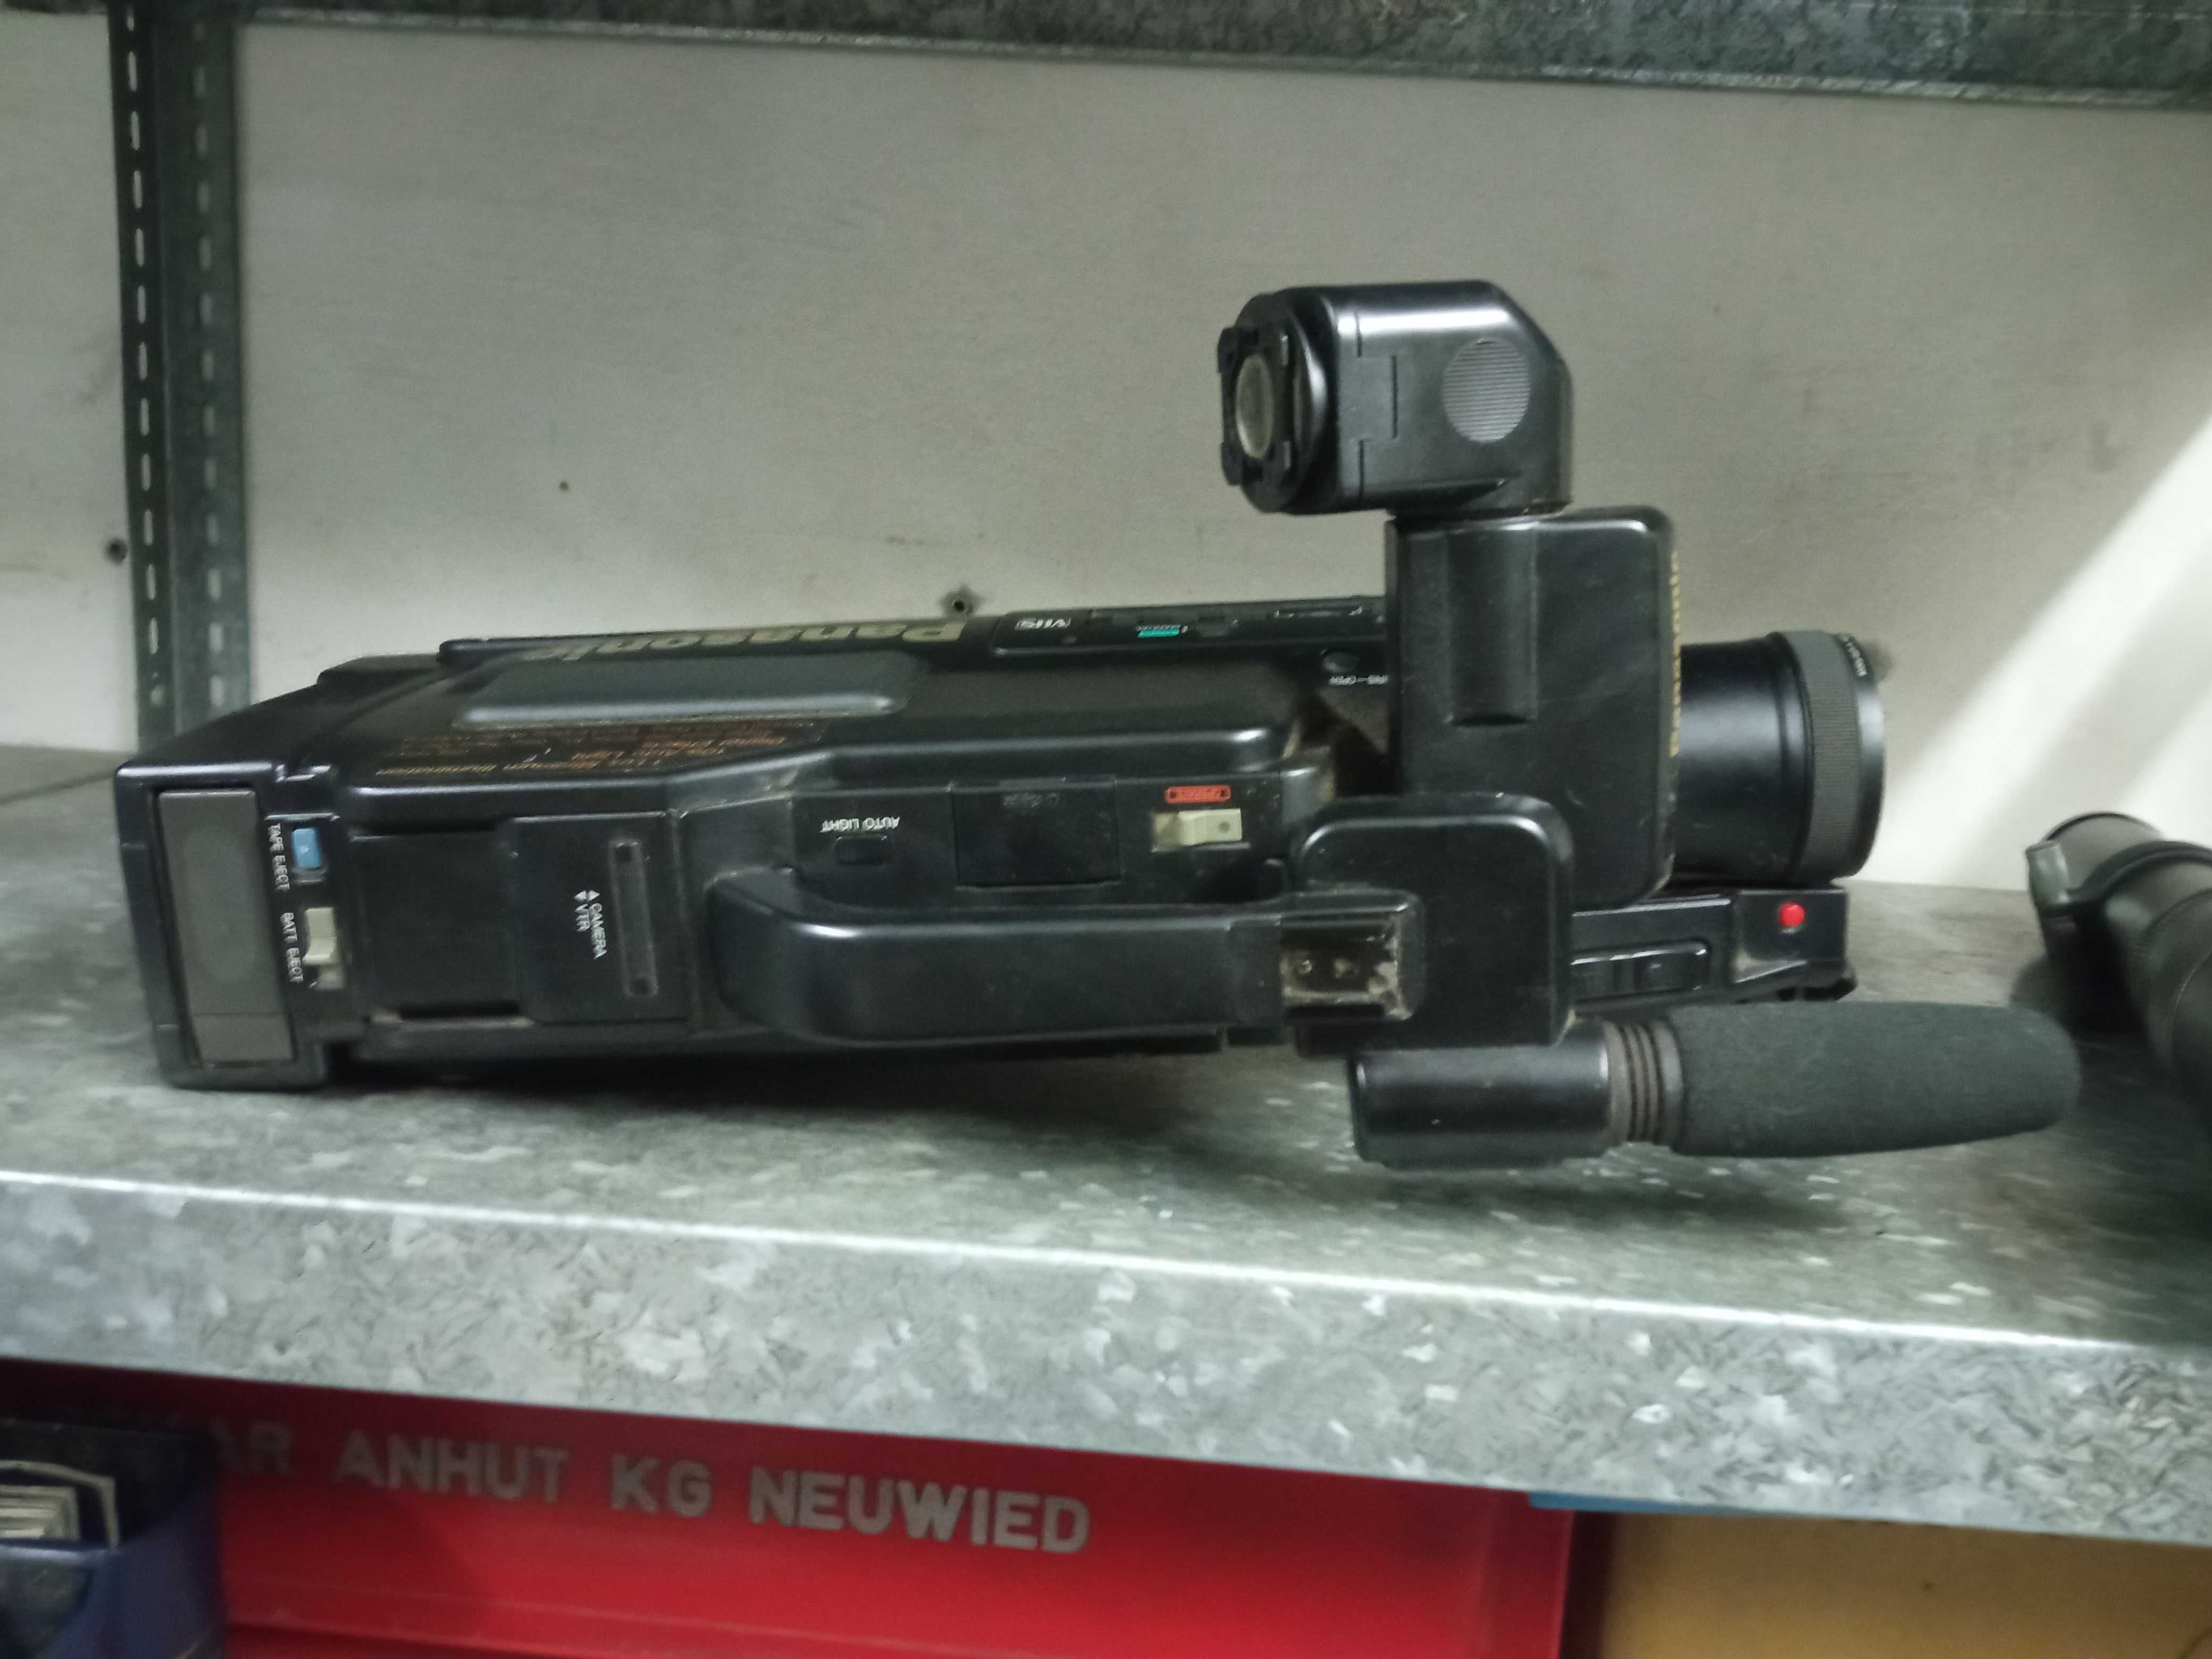 Камера Panasonic M 40